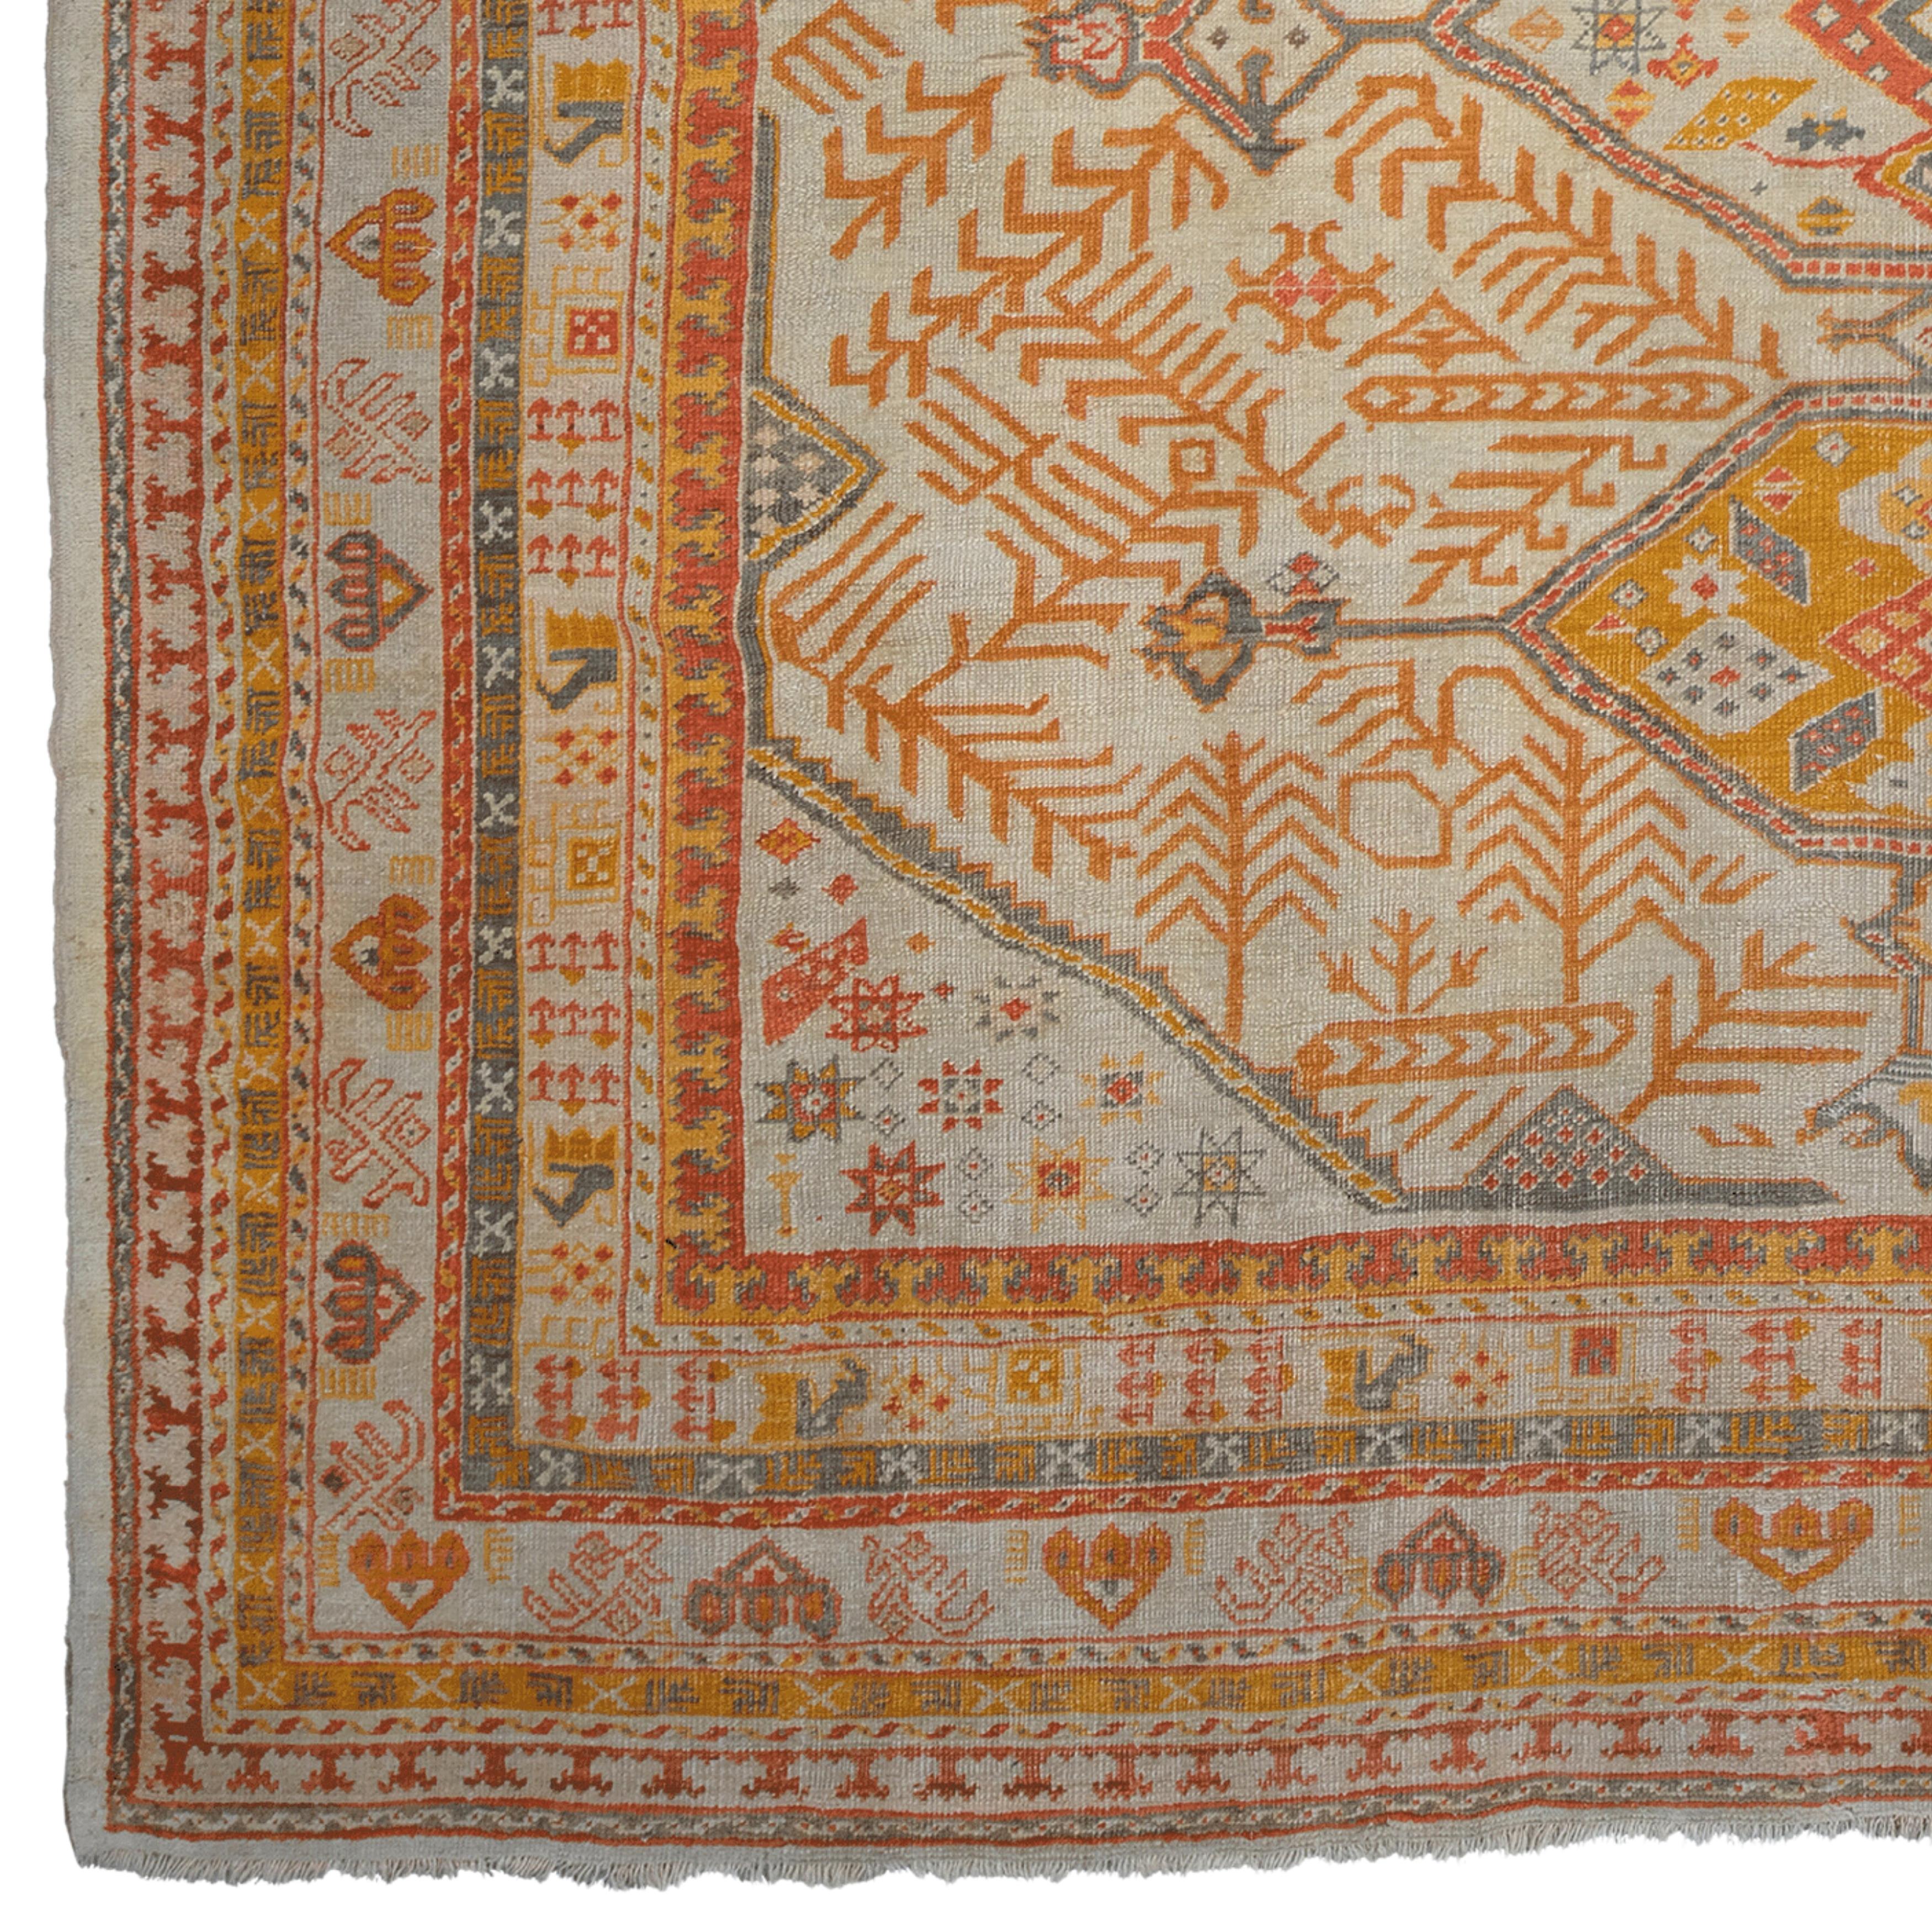 Tapis ancien Ushak - Tapis turc ancien du 19e siècle
Taille : 305x360 cm

Cet élégant tapis Ushak du XIXe siècle fait entrer dans votre maison l'élégance et le design sophistiqué de la période ottomane. Avec sa palette de couleurs riches et sa